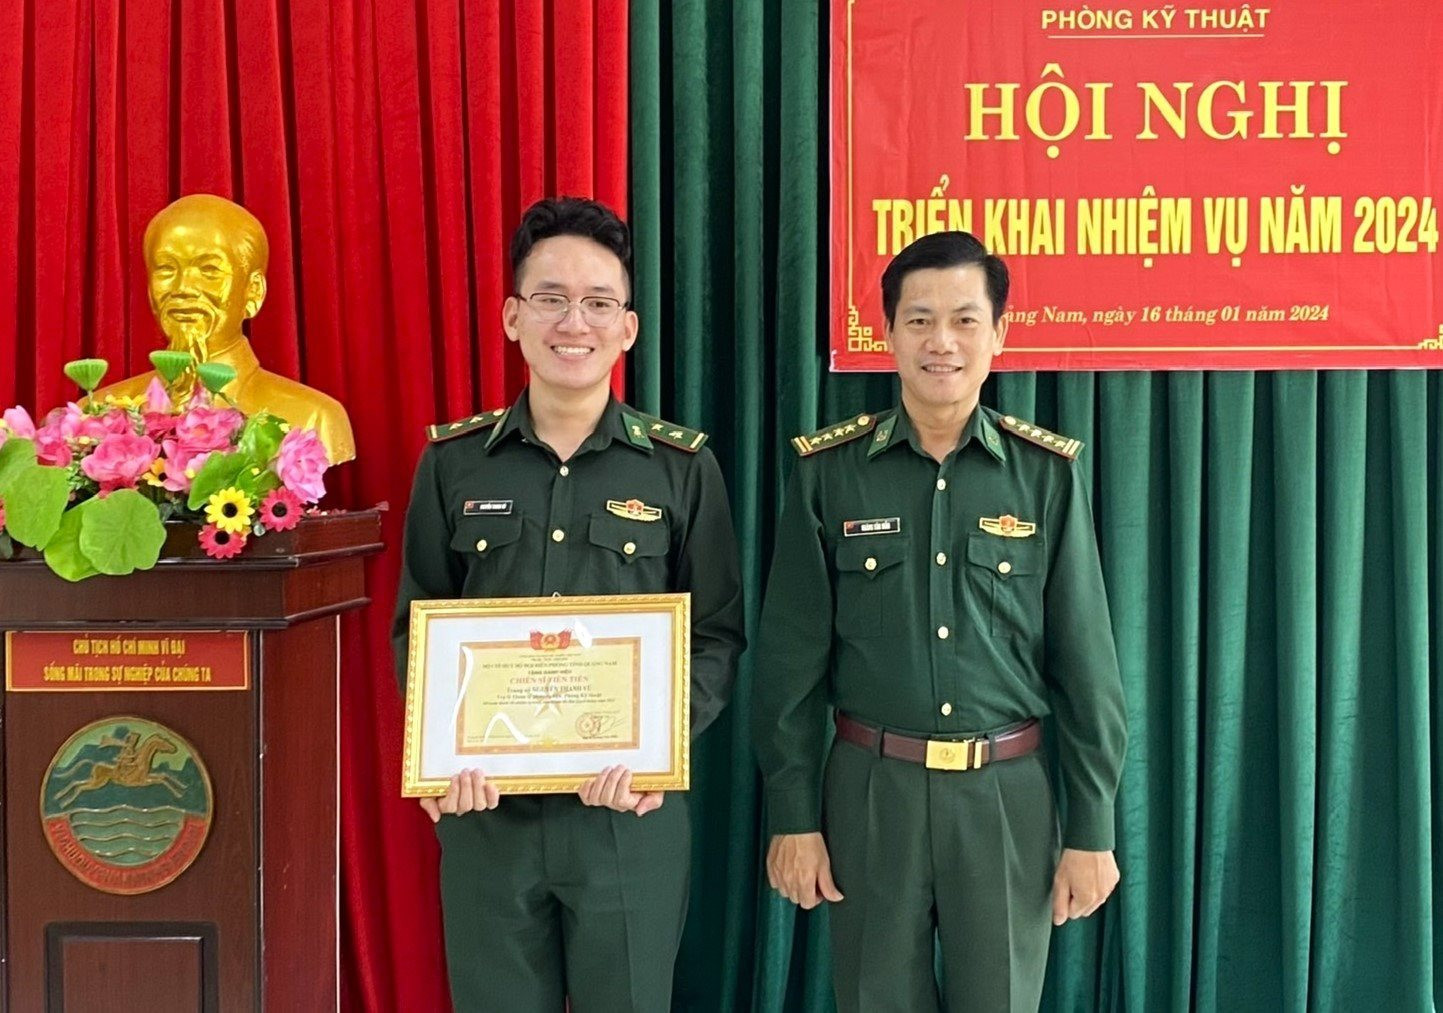 Trung úy Nguyễn Thanh Vũ nhận danh hiệu thi đua năm 2024. Ảnh: Đ.N